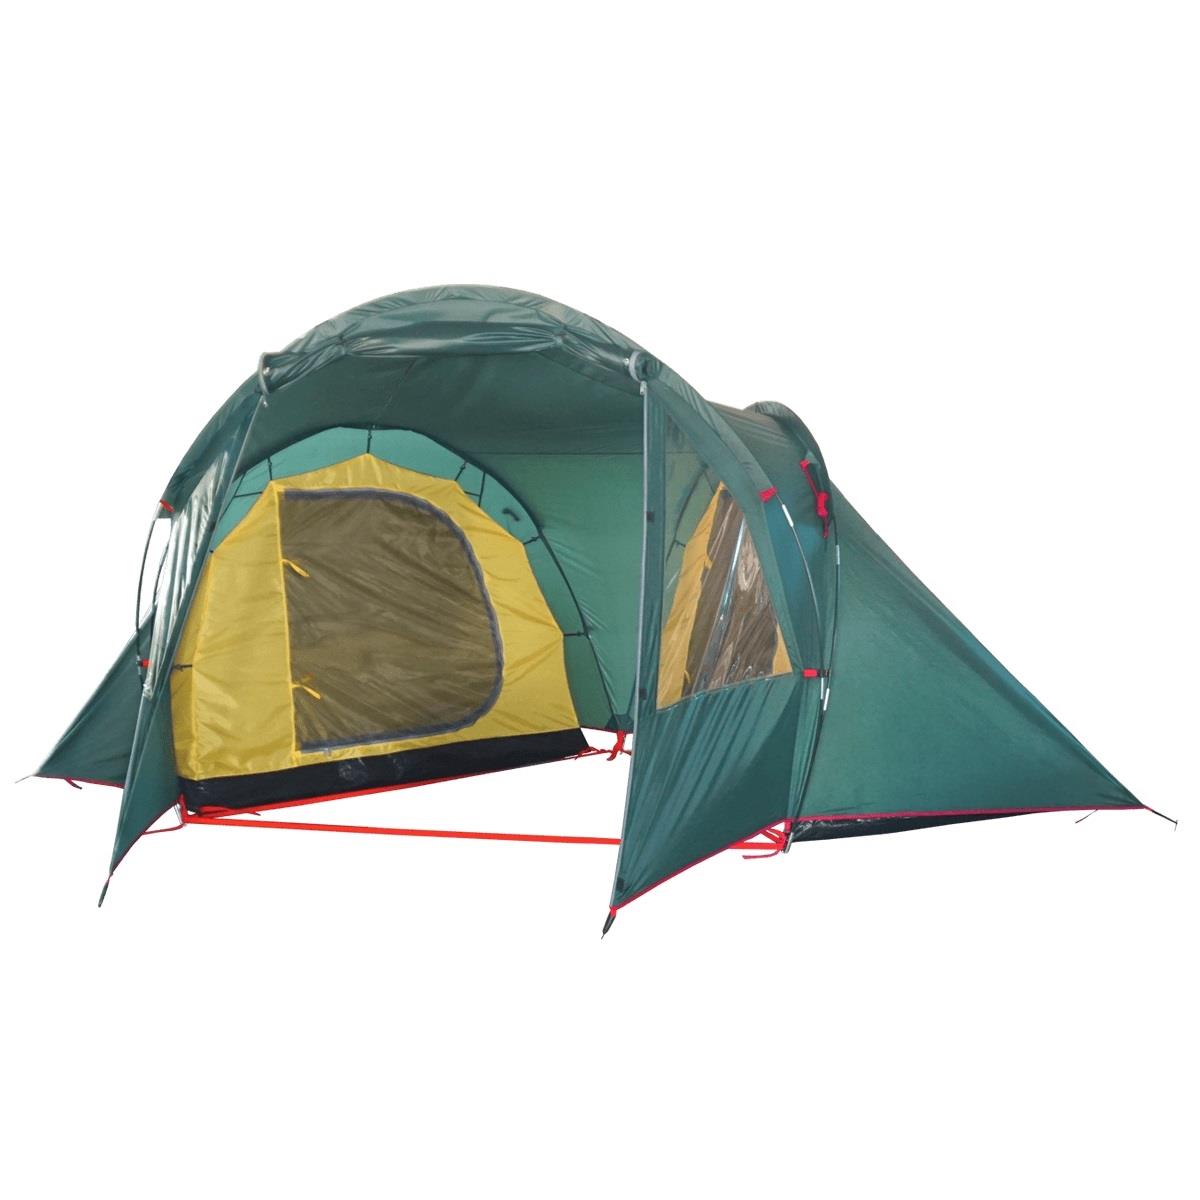 Палатка Double 4 (T0509)  BTrace палатка туристическая dakota 4 р 210 х 240 х 140 см 4 местная двухслойная